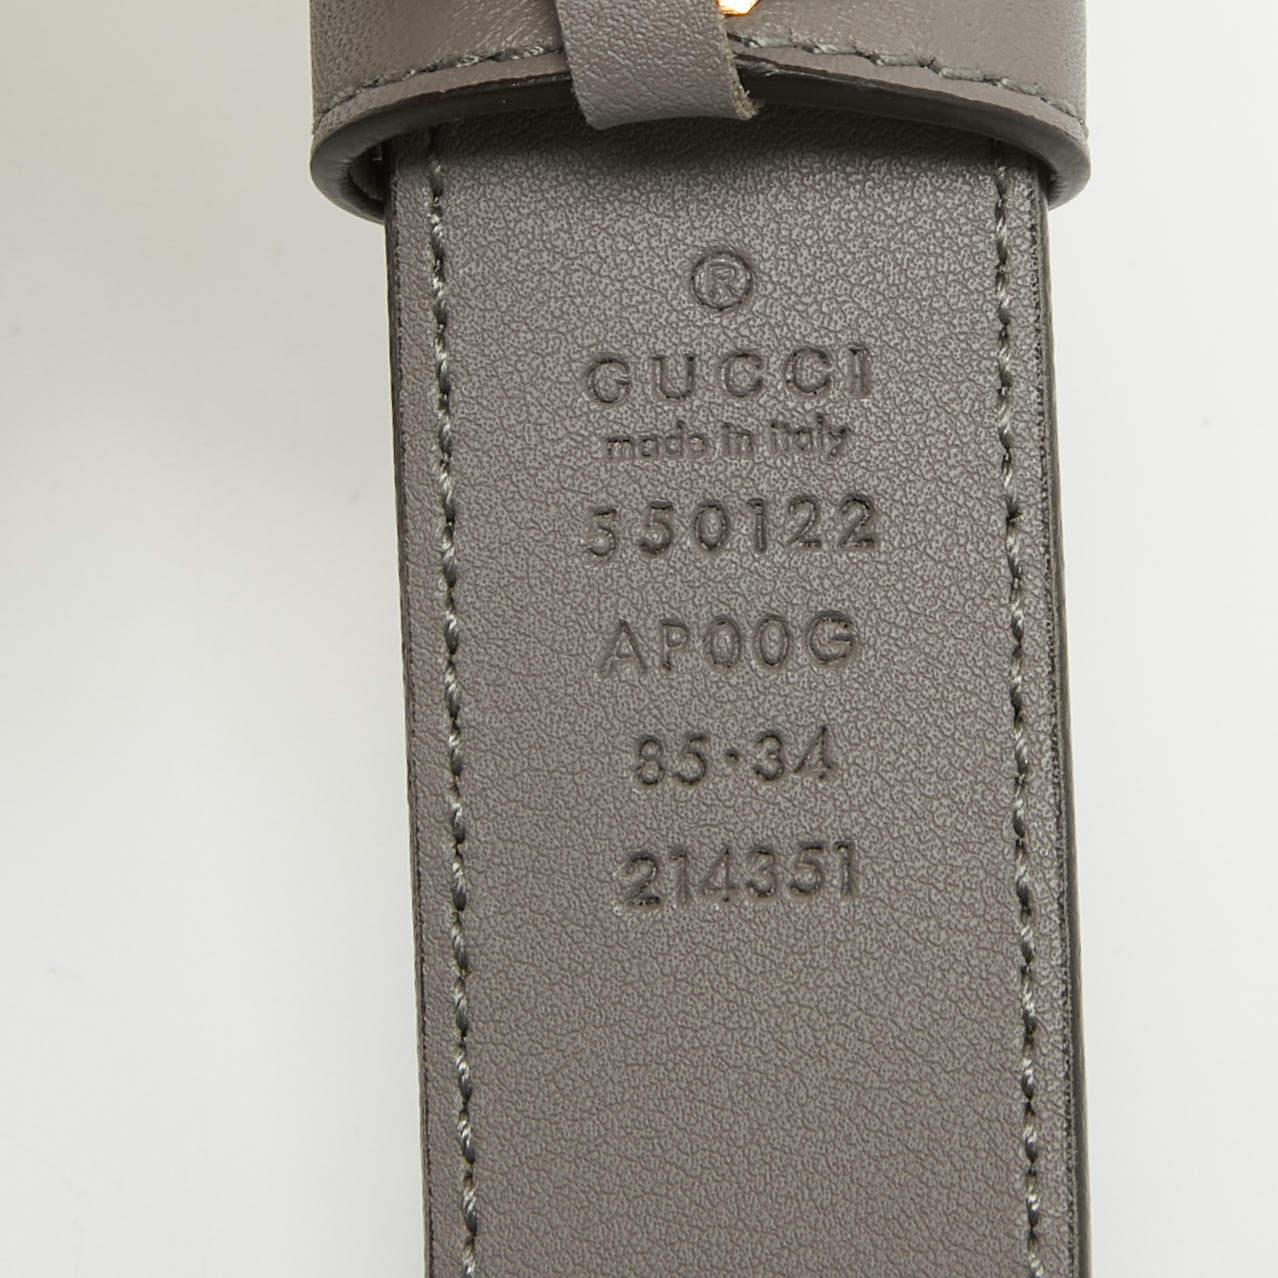 Dieser Gürtel von Gucci vereint zwei der einzigartigsten Codes des Labels in sich. Die Kreation ist aus feinem Leder in einem grauen Farbton gefertigt und mit der charakteristischen Zumi-Schnalle aus goldfarbenem Metall versehen. Nehmen Sie diesen